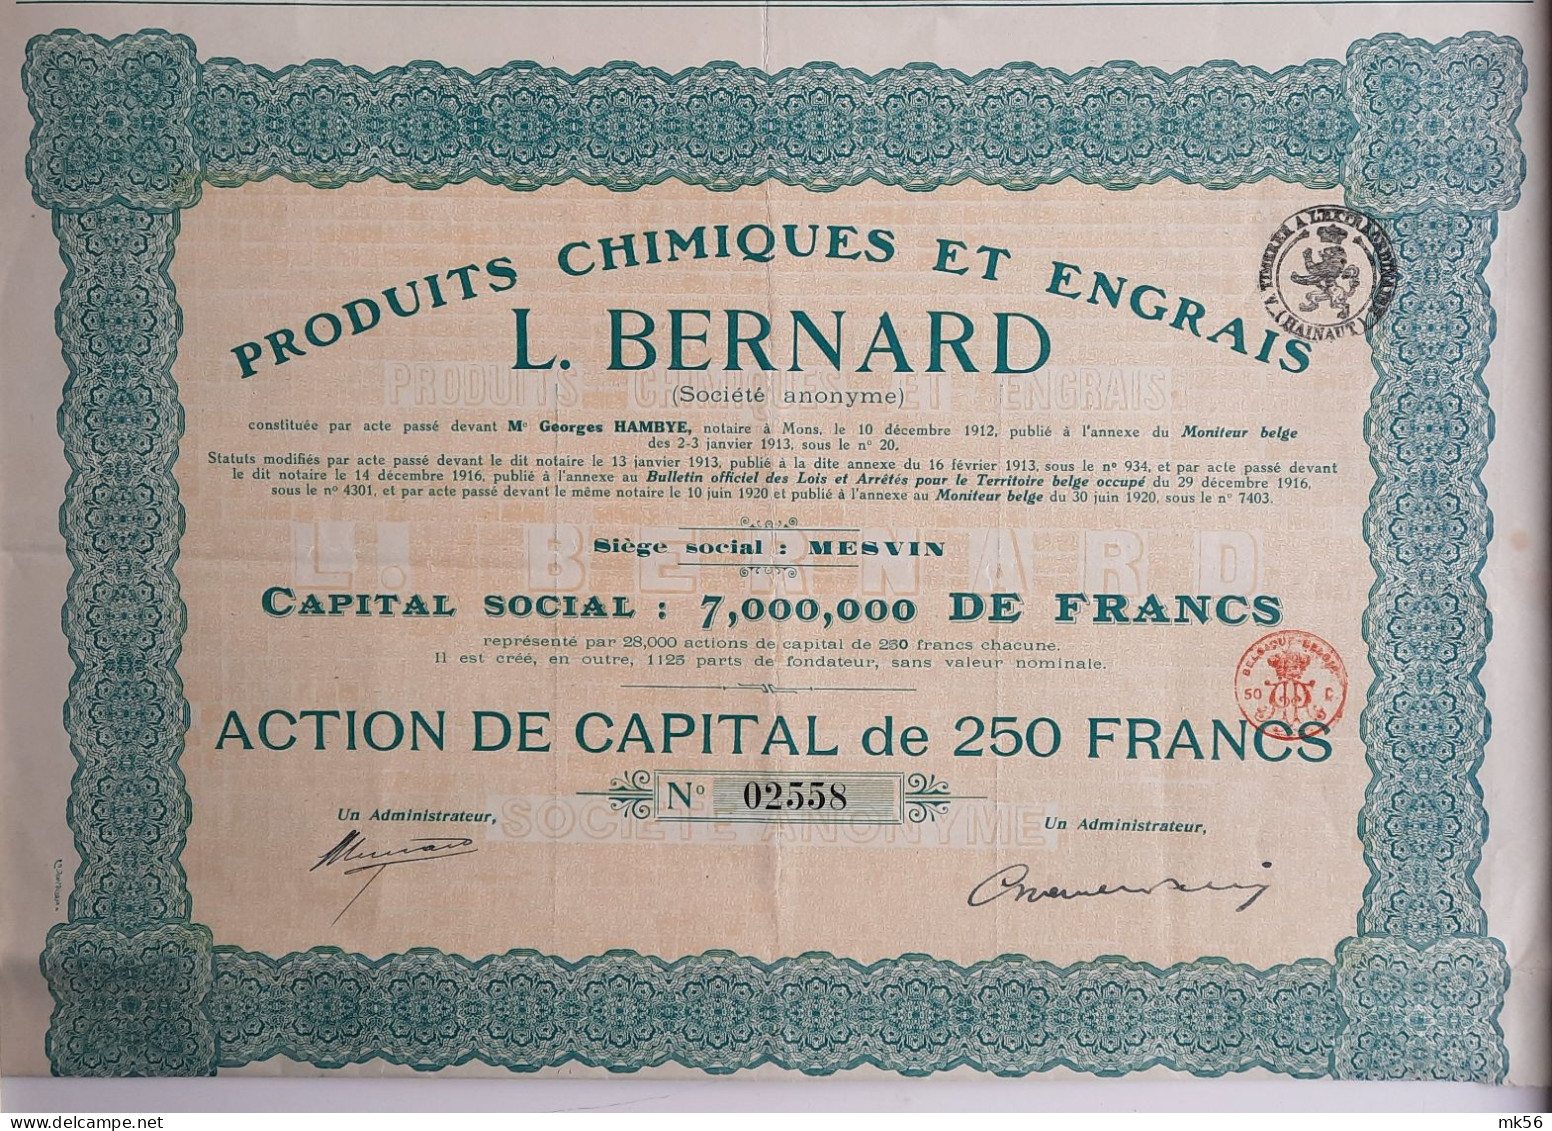 Produits Chimiques Et Engrais - L.Bernard - Mesvin - 1920 - Agricultura